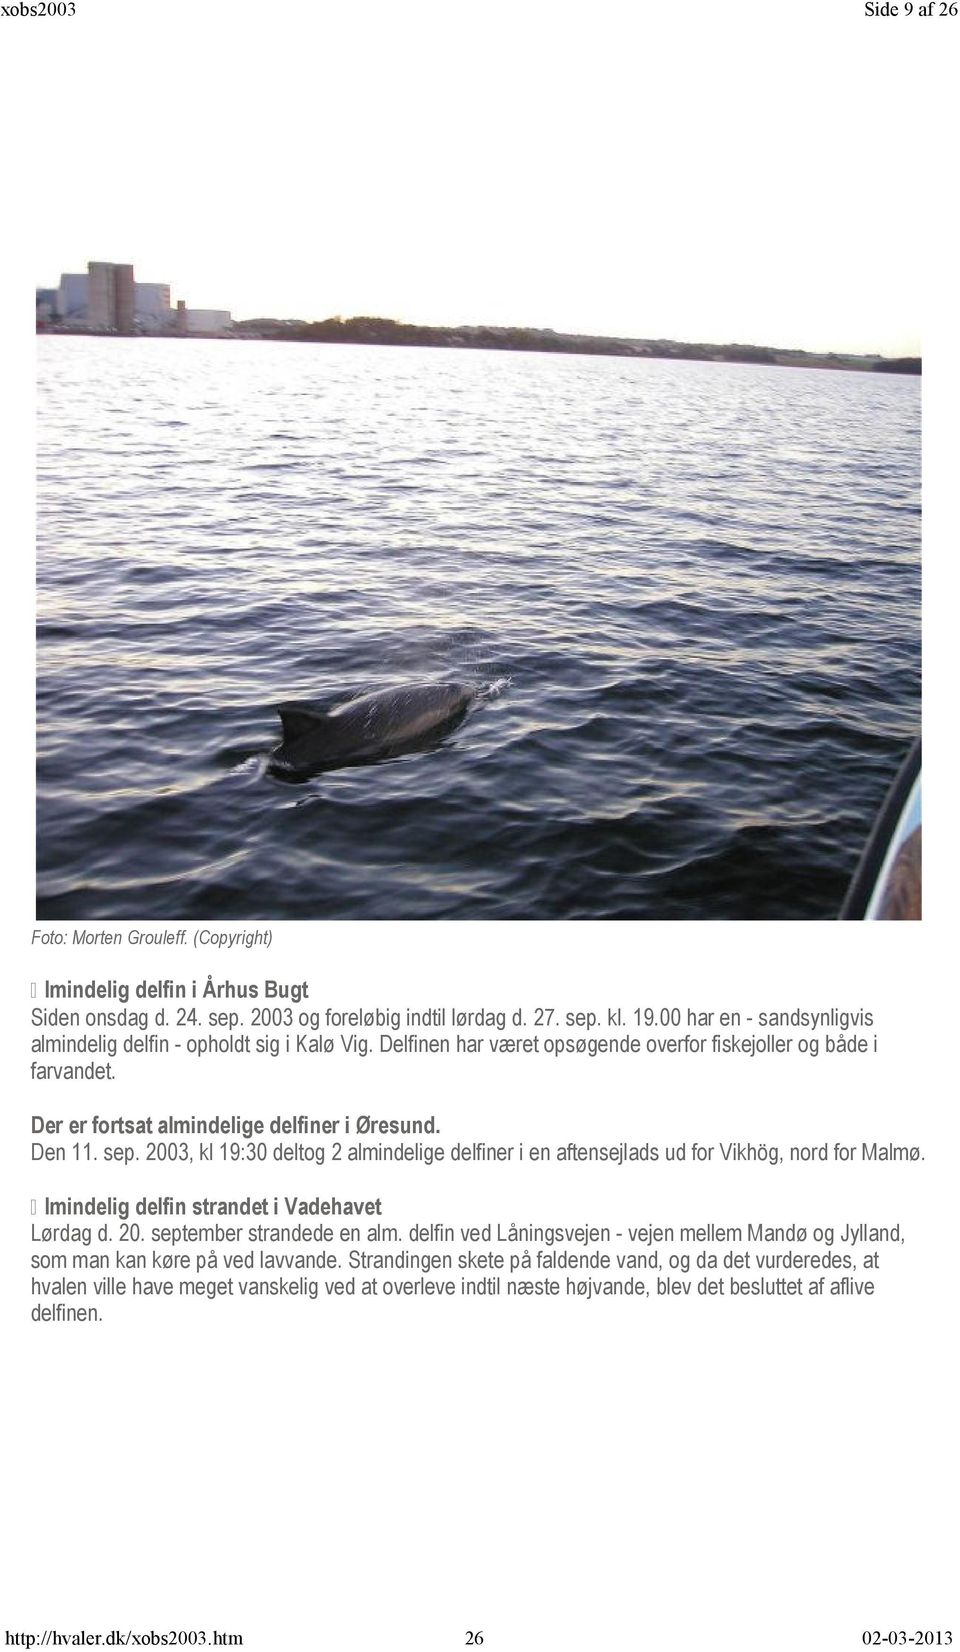 2003, kl 19:30 deltog 2 almindelige delfiner i en aftensejlads ud for Vikhög, nord for Malmø. A lmindelig delfin strandet i Vadehavet Lørdag d. 20. september strandede en alm.